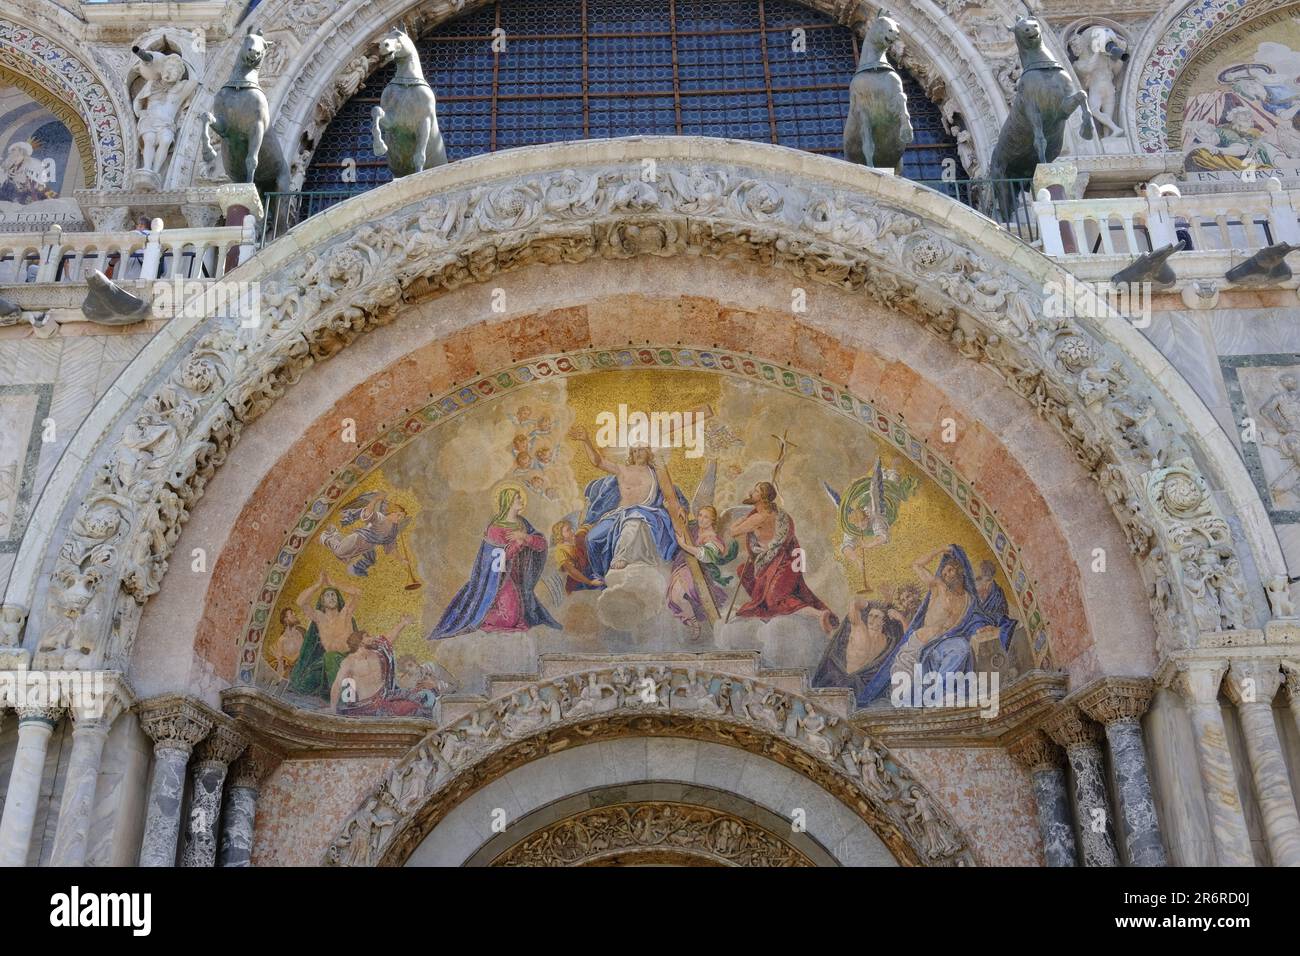 Venecia Italia - Basílica de San Marcos - Basílica de San Marcos - cuadros de fachada del lado oeste Foto de stock